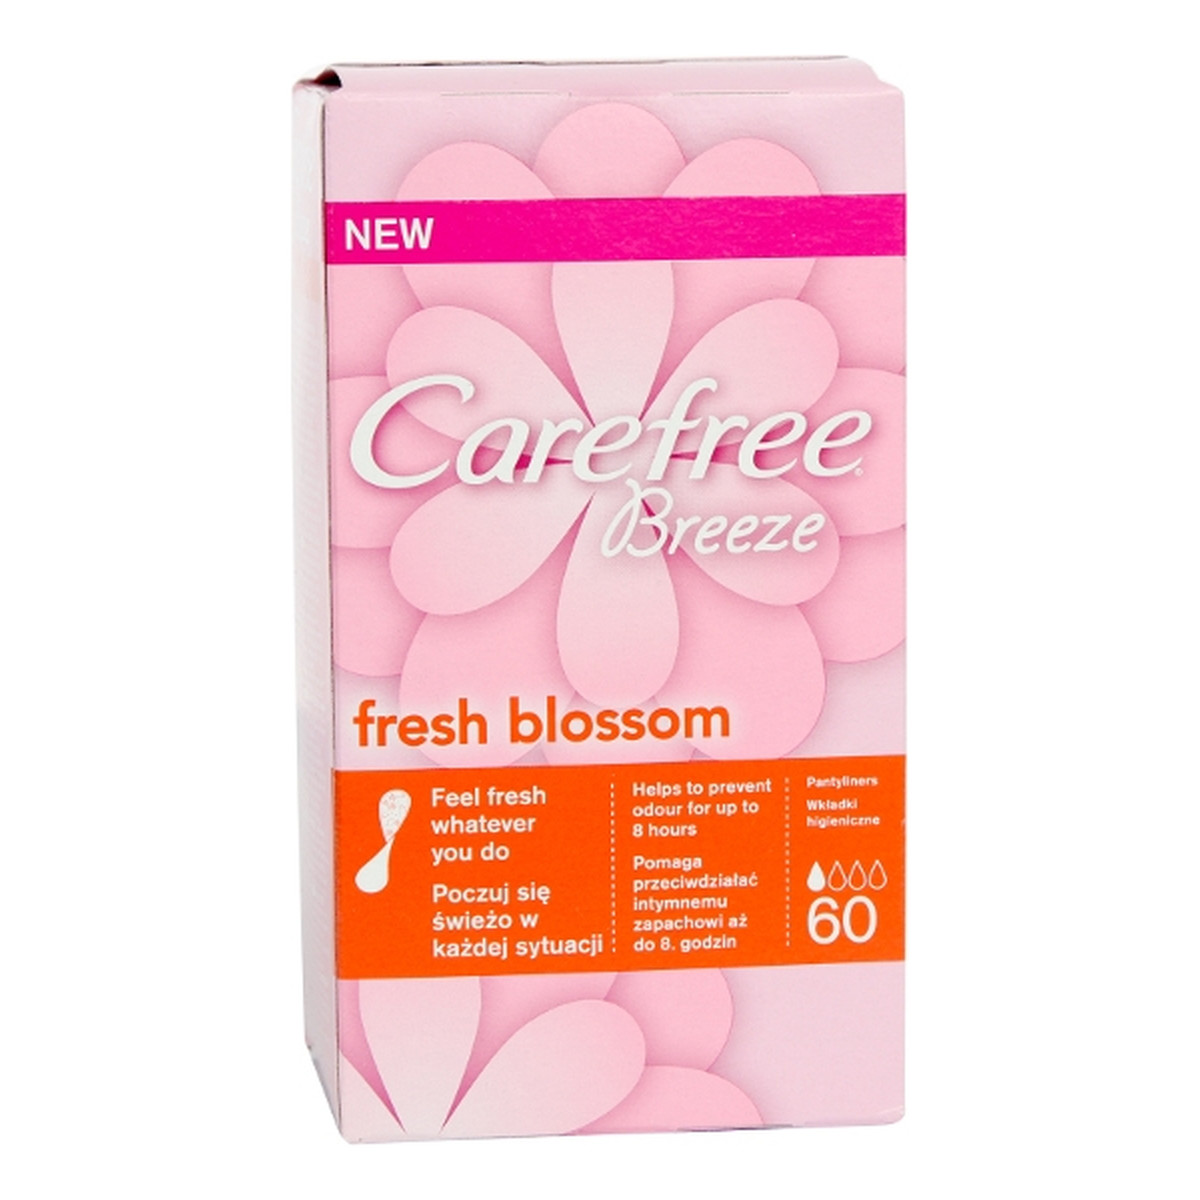 Carefree Fresh Blossom Breeze Wkładki Higieniczne 60szt.